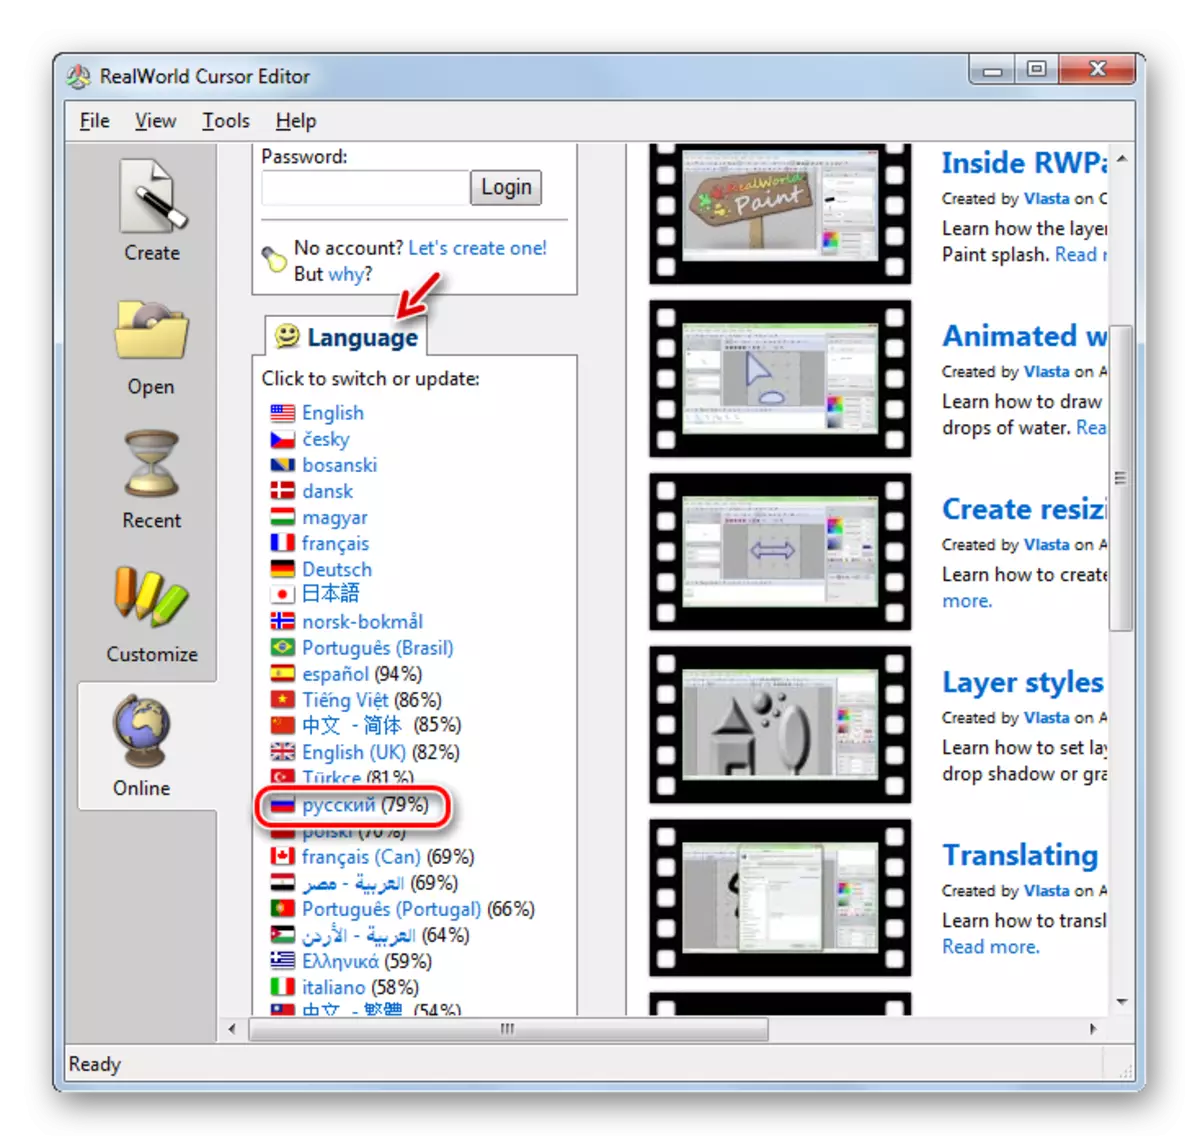 Změna rozhraní mluvících aplikací angličtiny k ruské jazykové verzi v programu RealWorld kurzorový editor v systému Windows 7